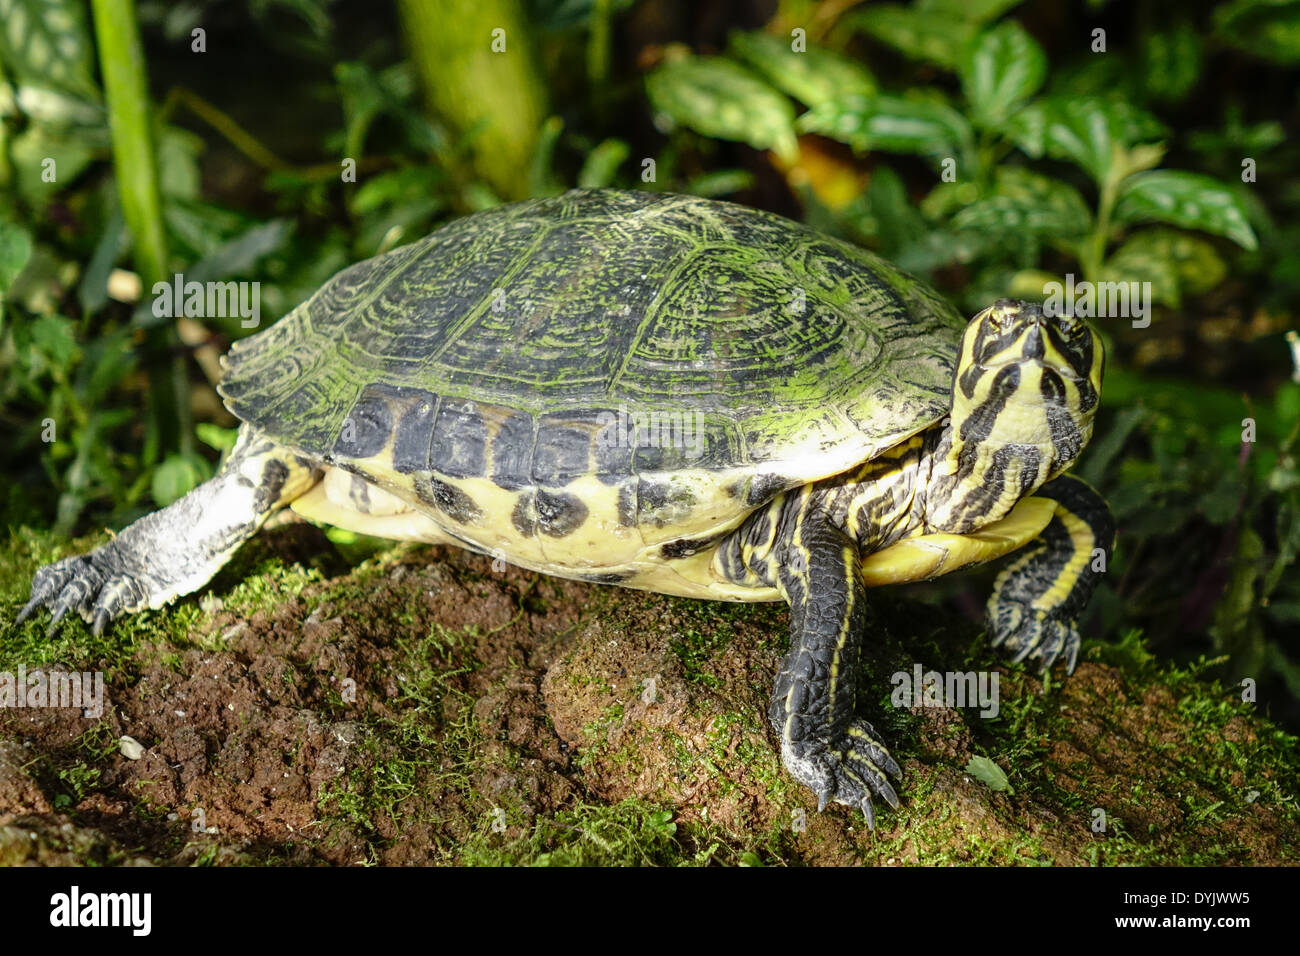 Wasserschildkröte im Gewächshaus, Botanischer Garten, München, Bayern, Deutschland Stock Photo